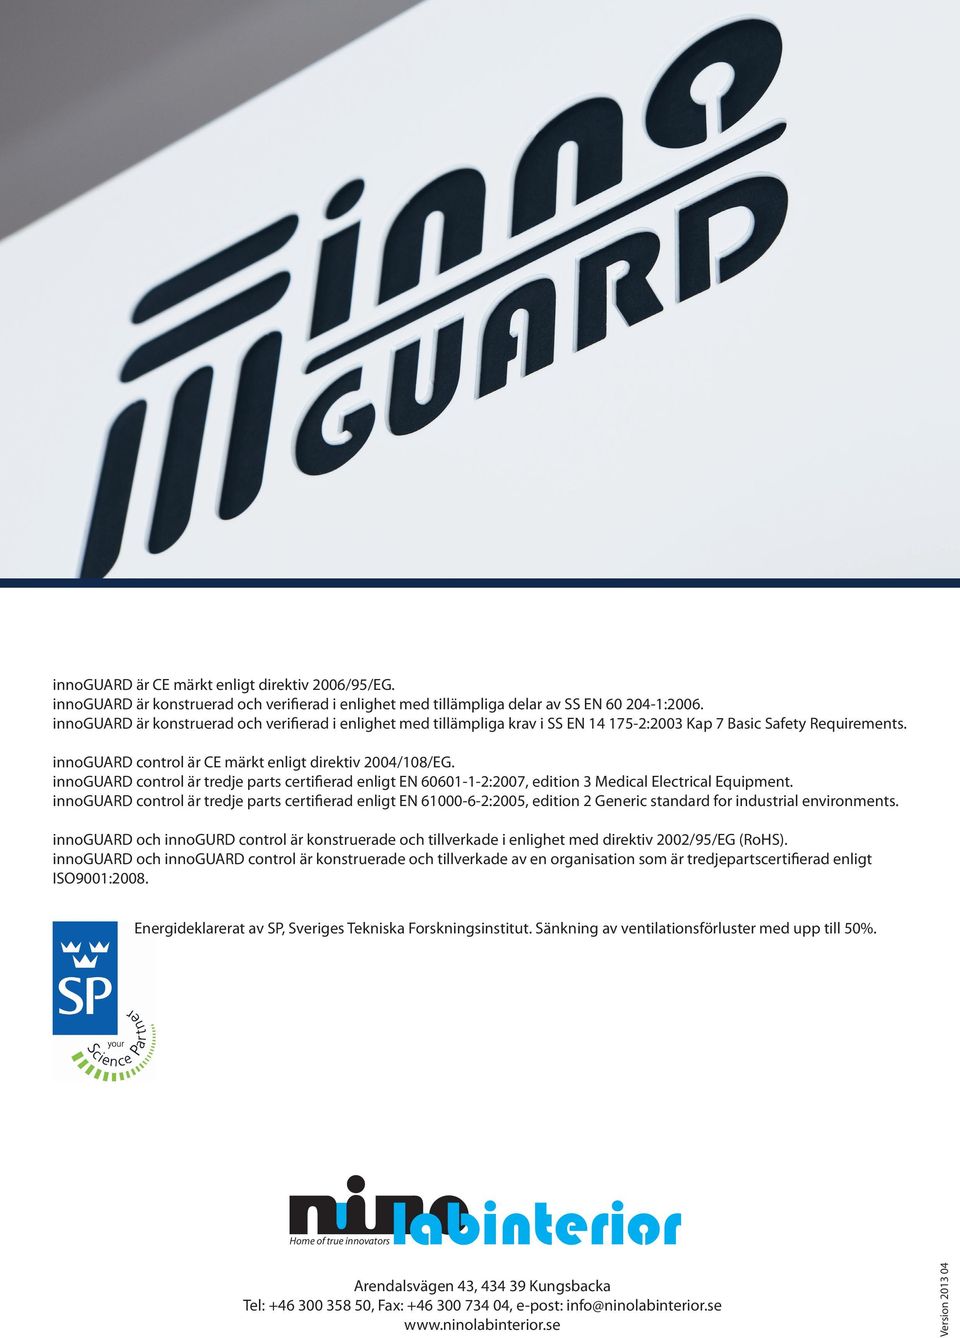 innoguard control är tredje parts certifierad enligt EN 60601-1-2:2007, edition 3 Medical Electrical Equipment.